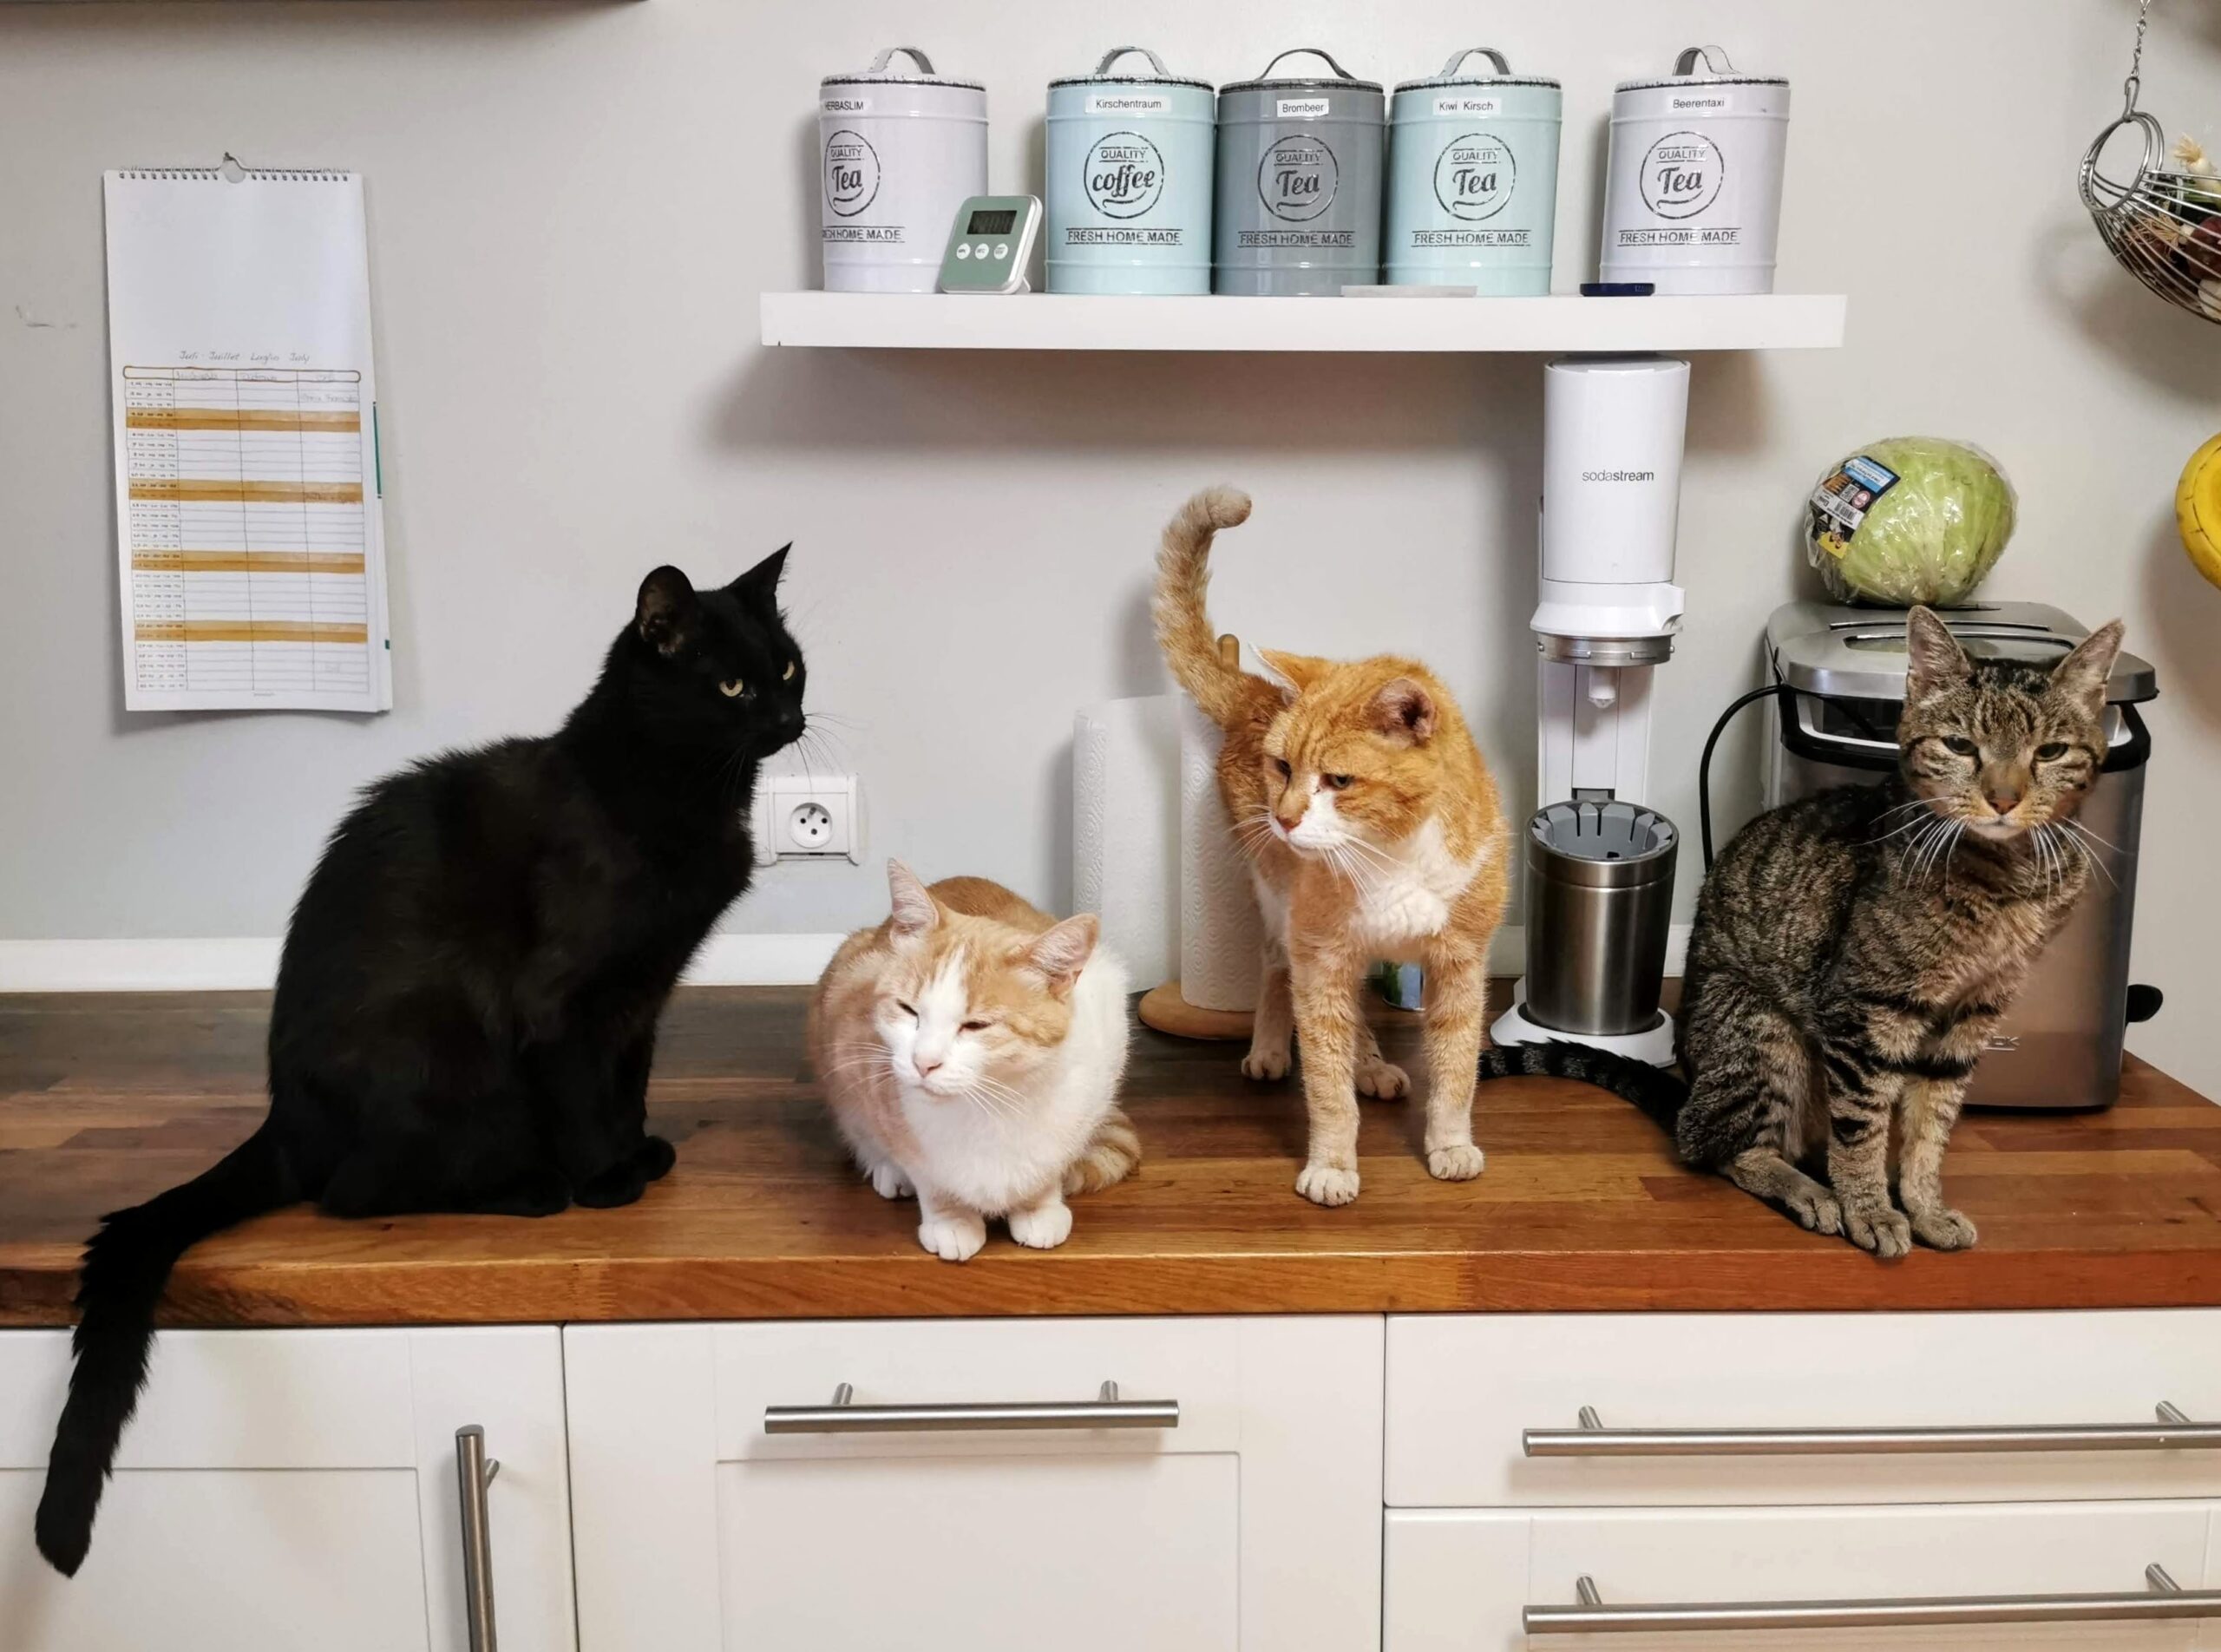 Vier Katzen sitzen zusammen auf einer Küchenarbeitsplatte